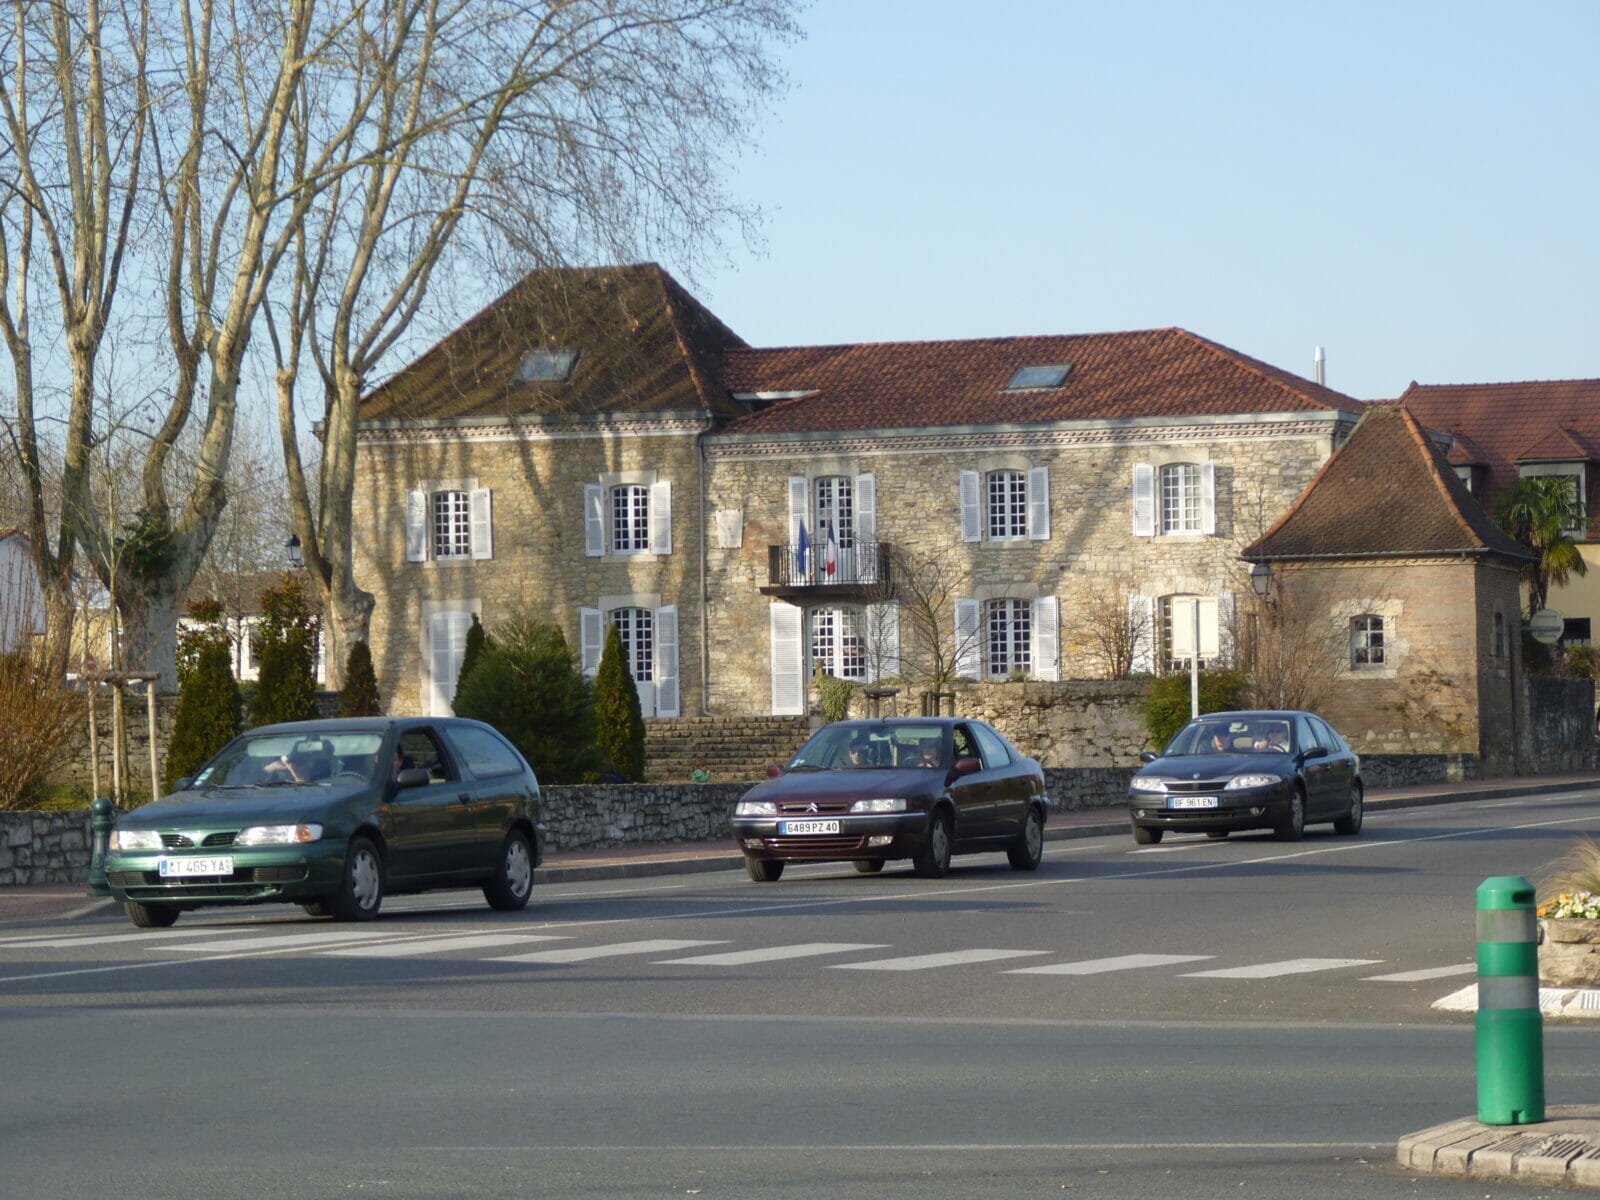 Saint-Paul-lès-Dax